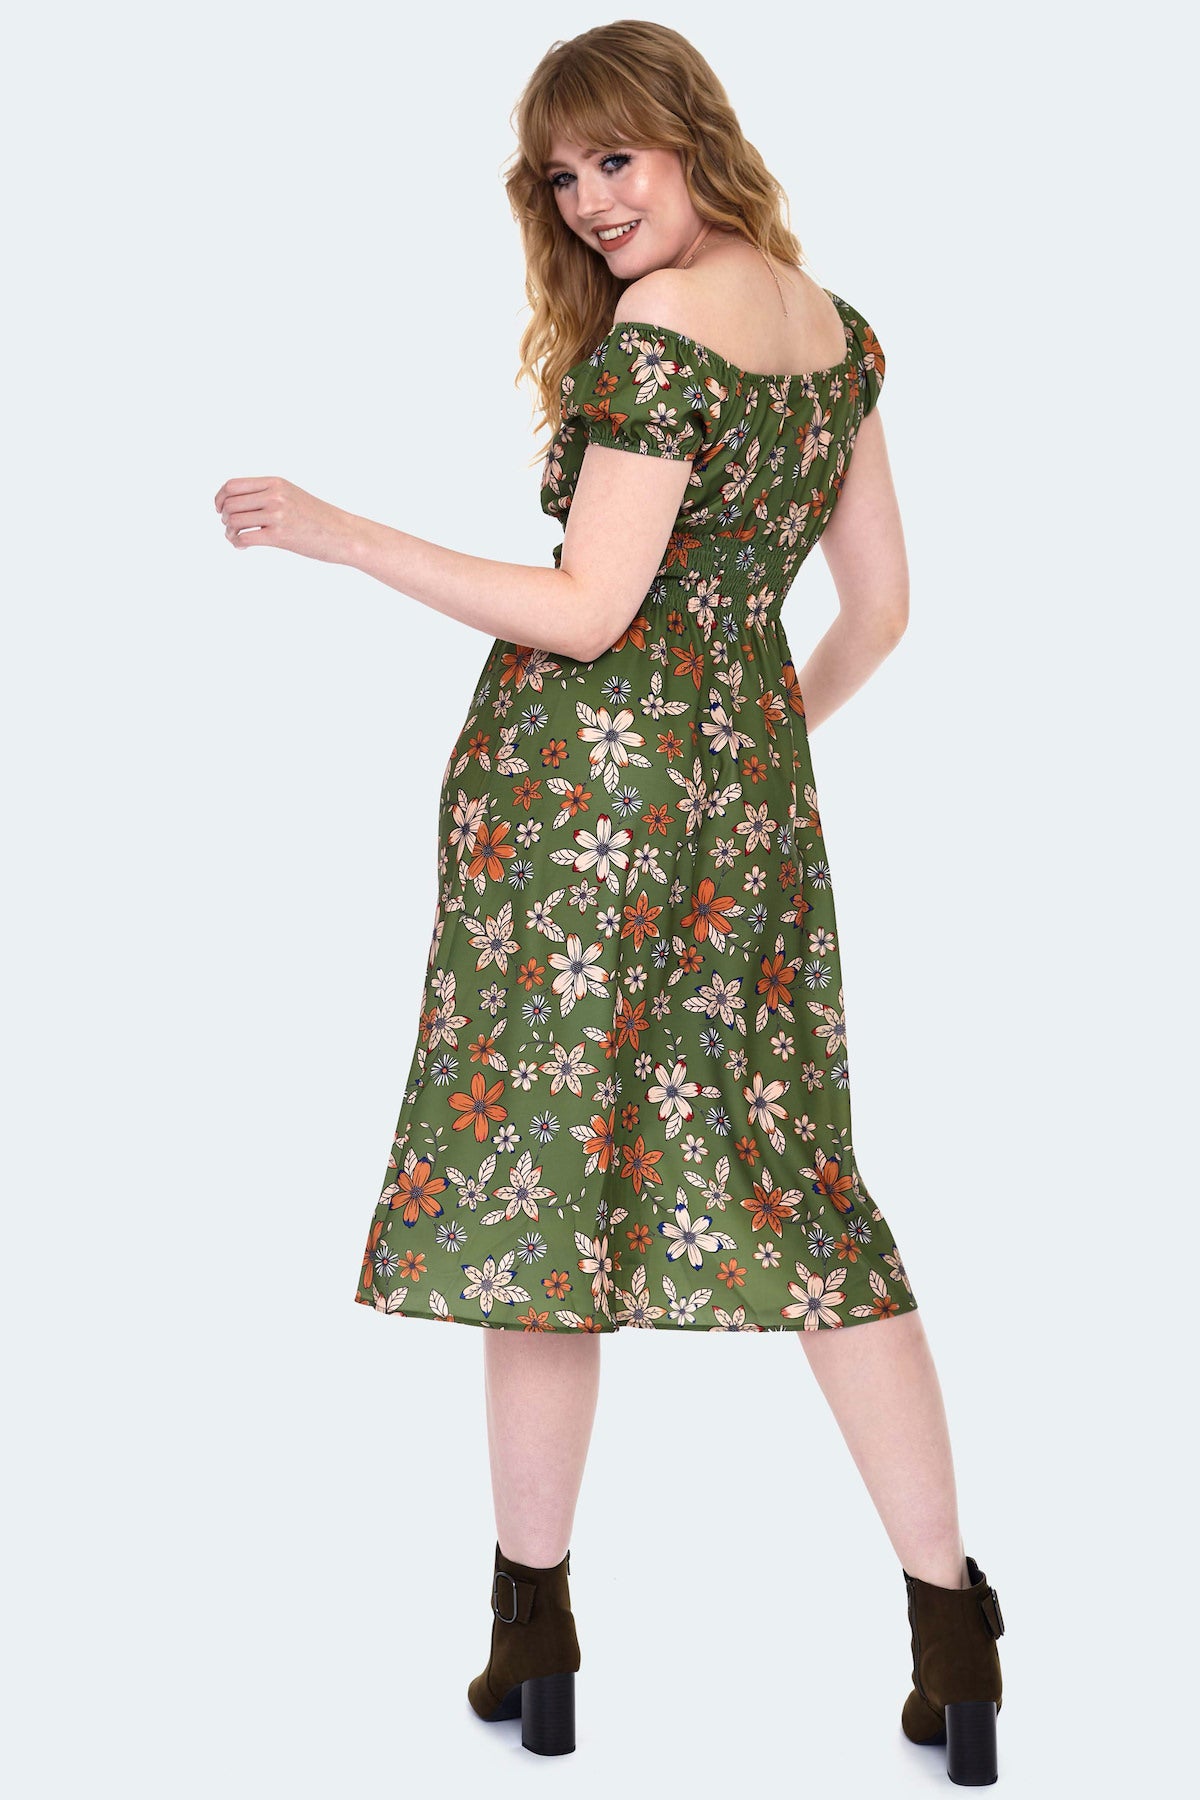 Olive Floral Print Dress